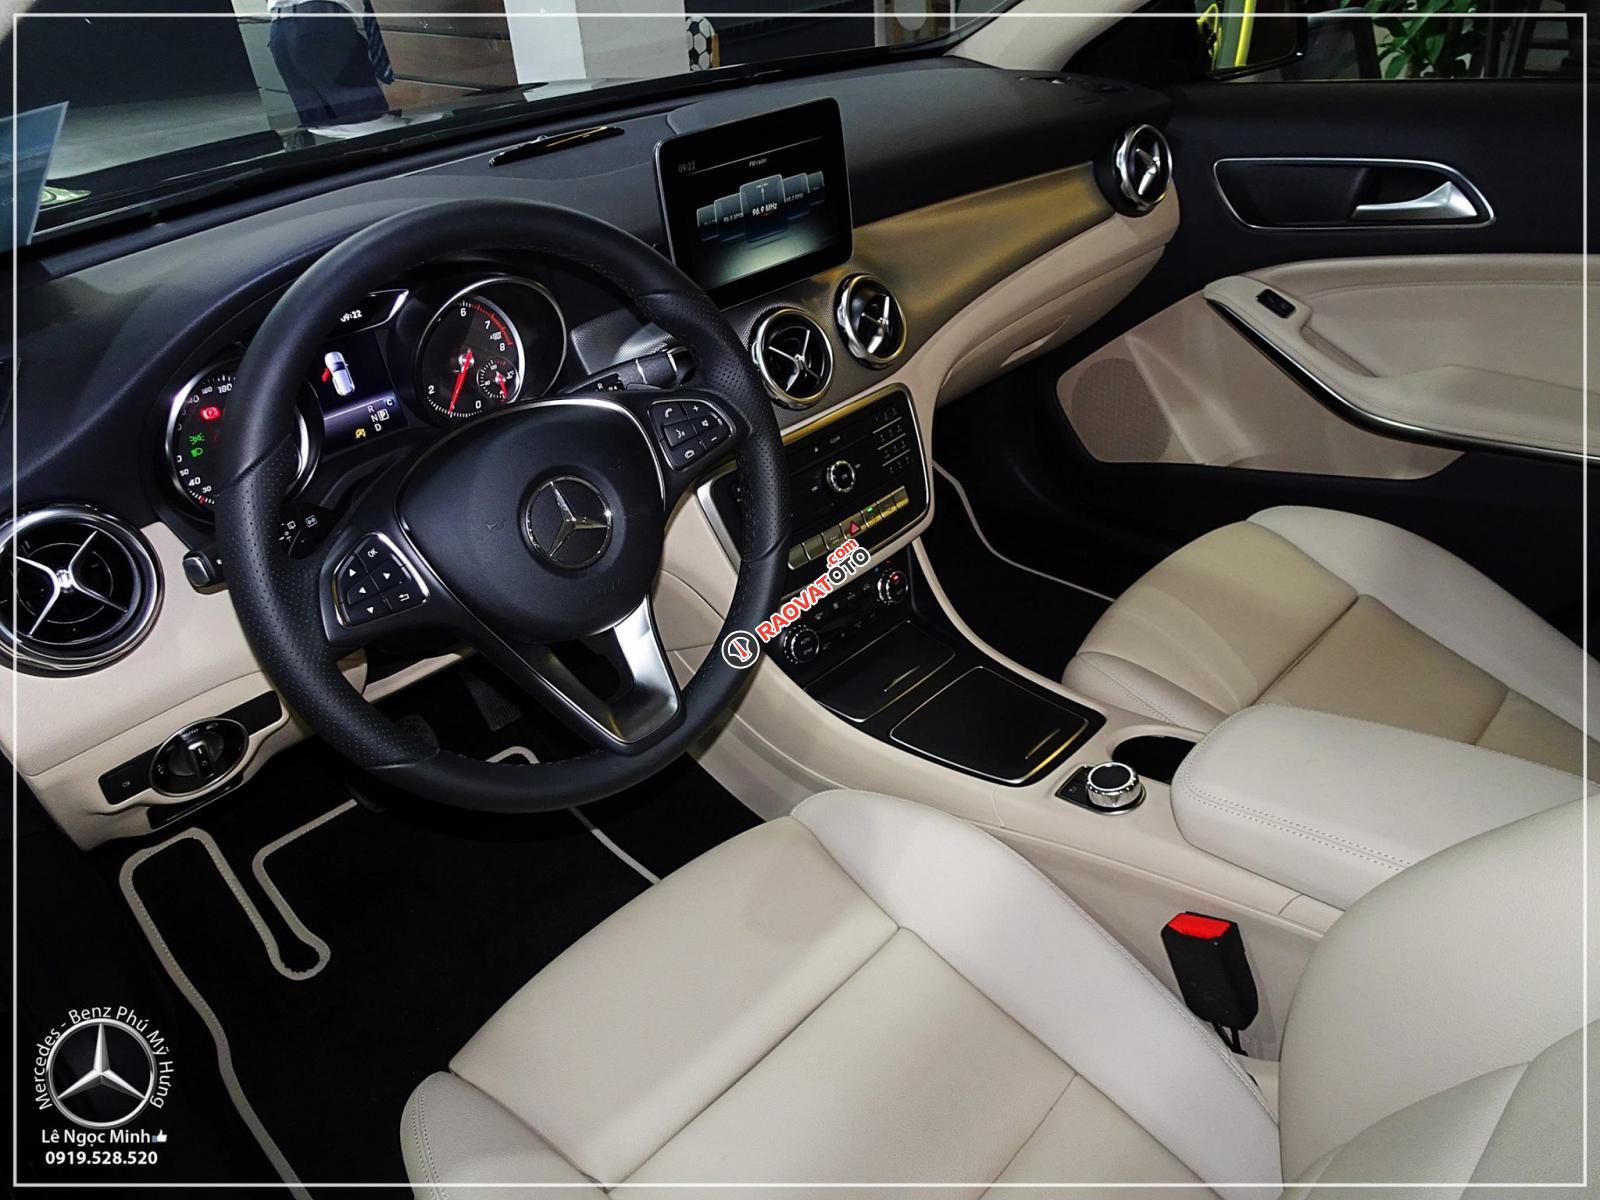 Bán Mercedes GLA 200 new - SUV 5 chỗ nhập khẩu - hỗ trợ ngân hàng 80%, xe giao ngay, LH 0919 528 520-6